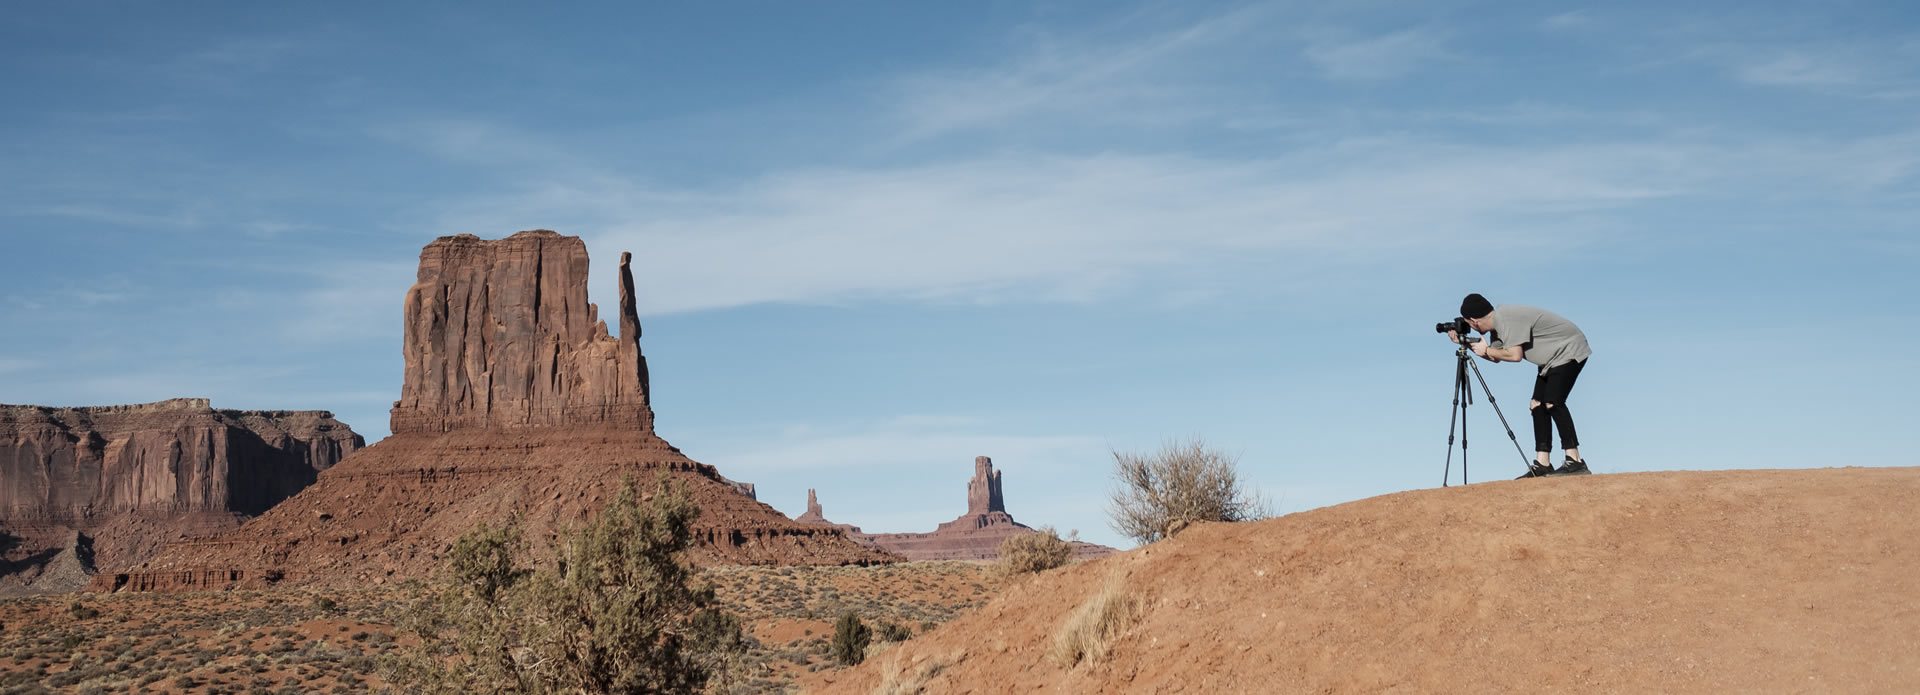 Fotografo naturalista che usa la sua macchina fotografica su un treppiede per scattare una foto in una zona desertica.